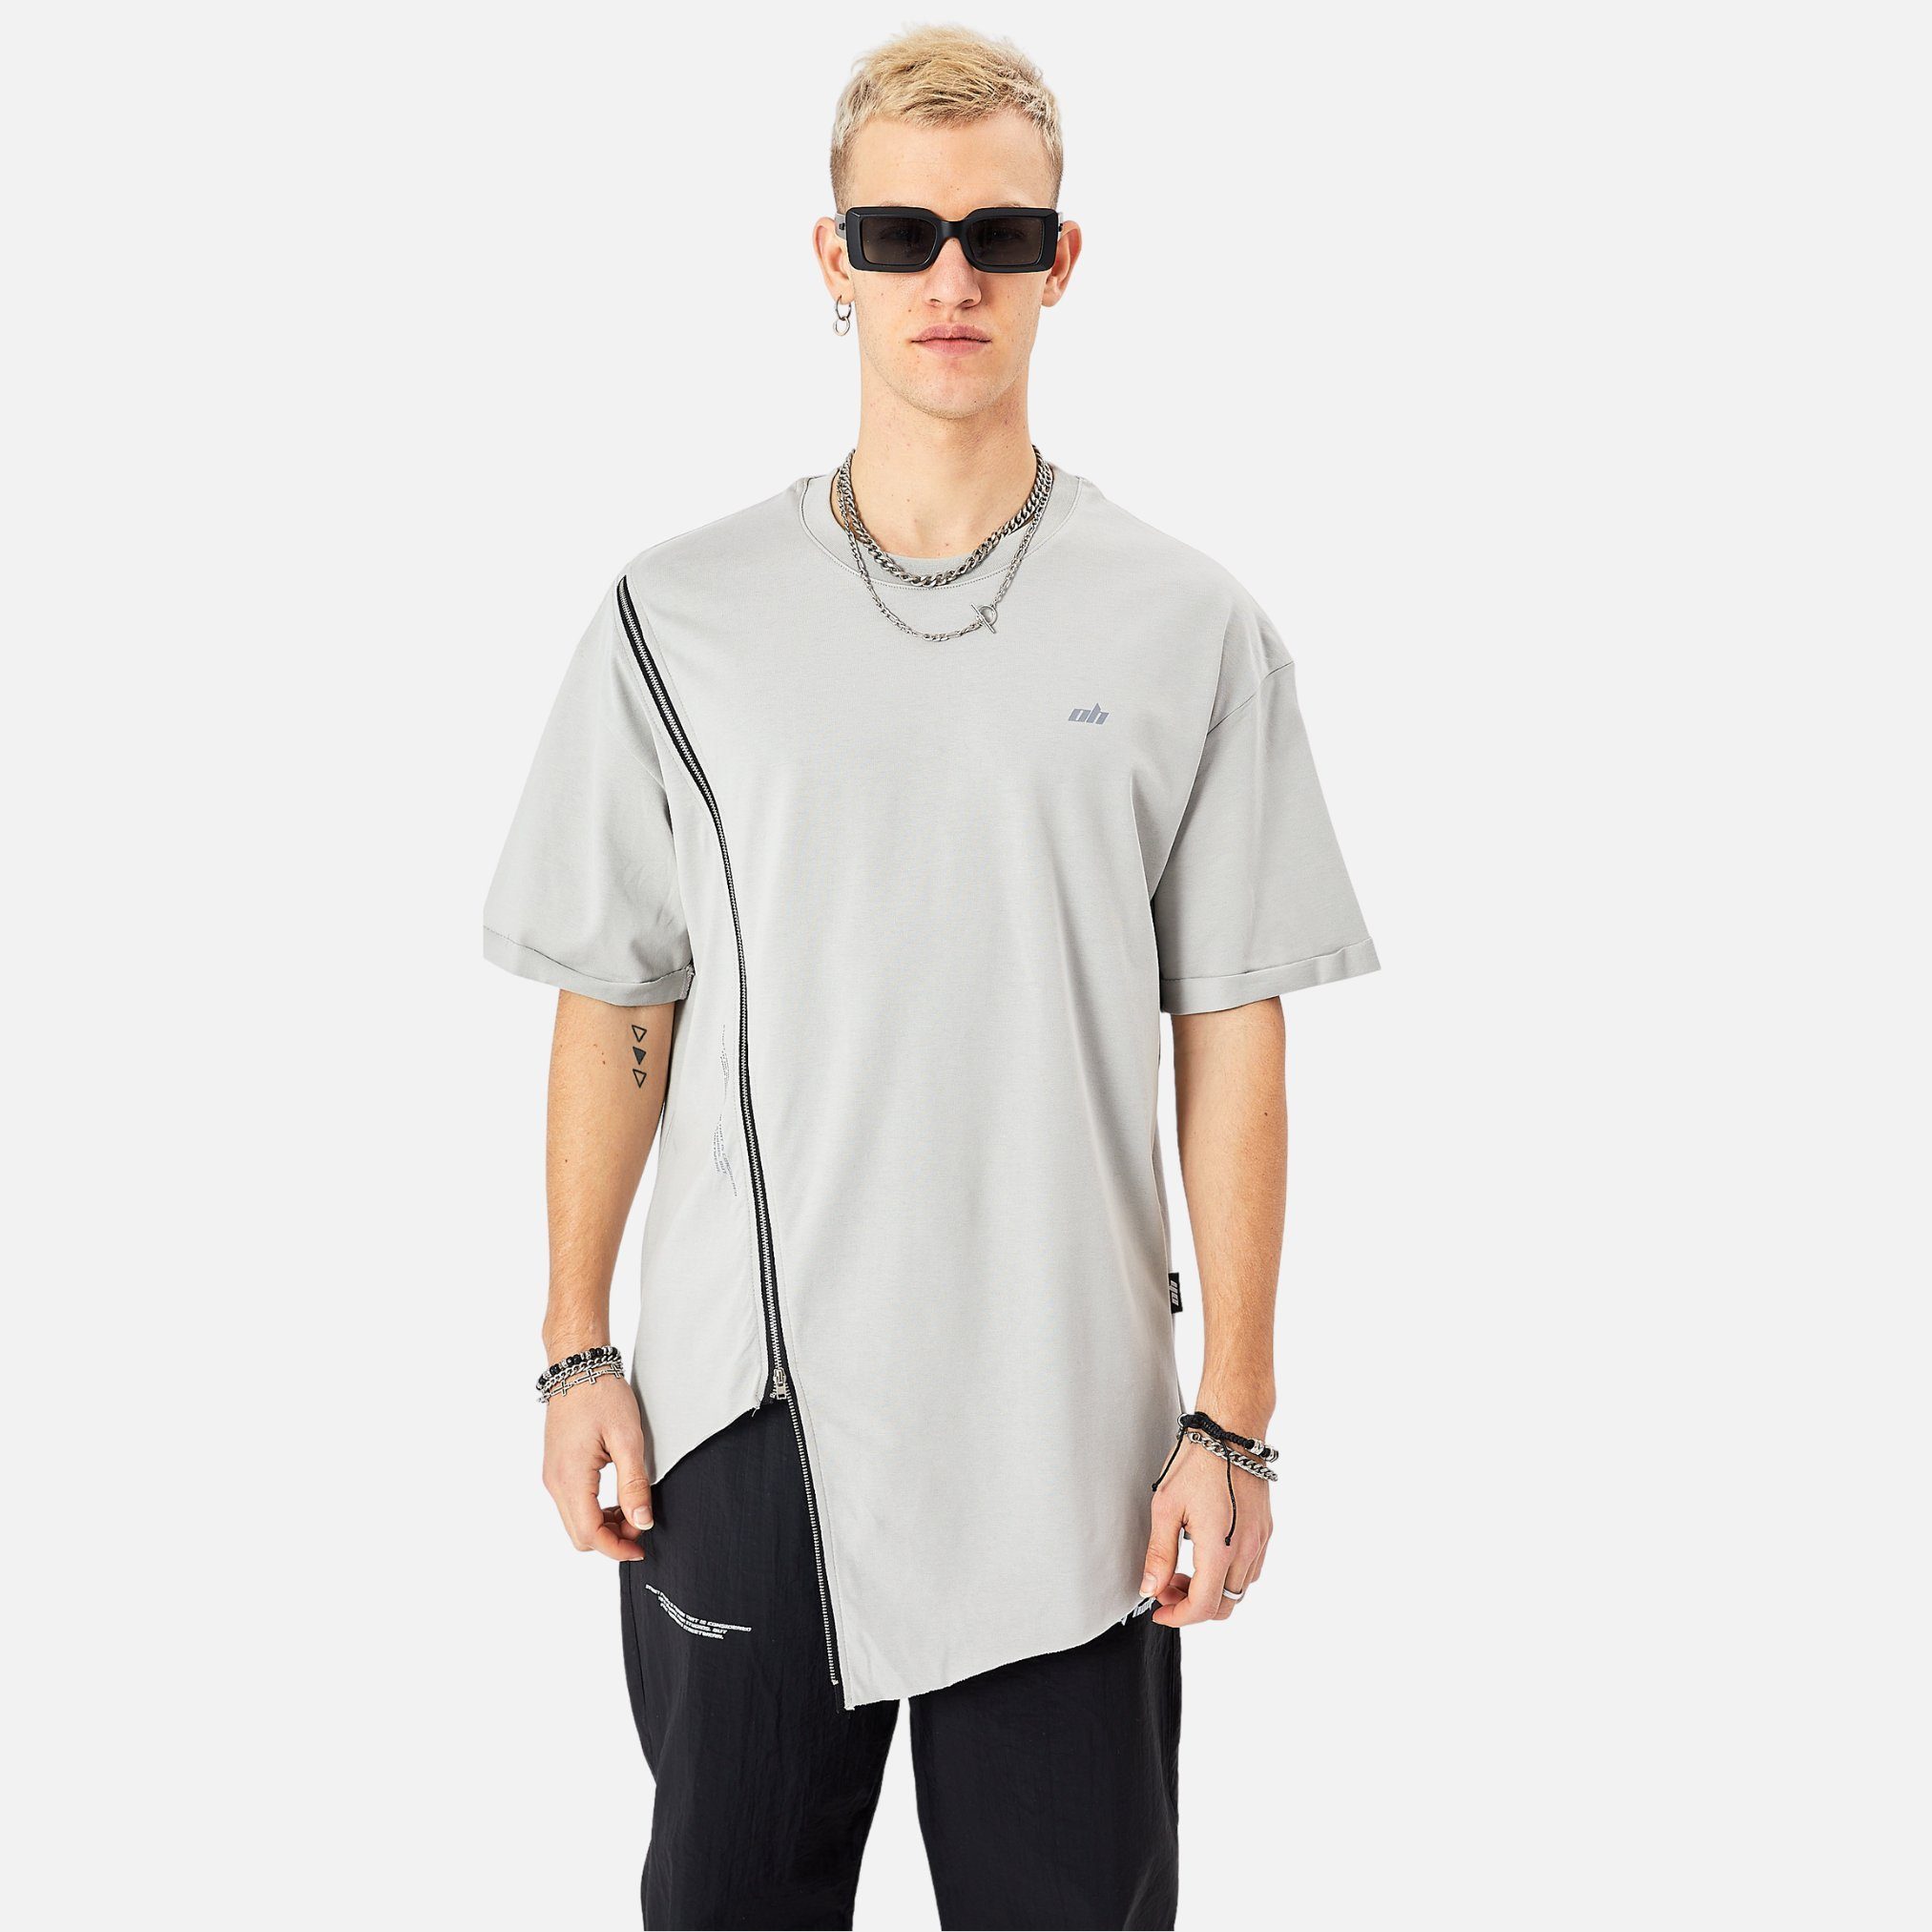 COFI Casuals T-Shirt Herren ZIP T-Shirt 320gsm 100% Cotton Oversize Fit Grau